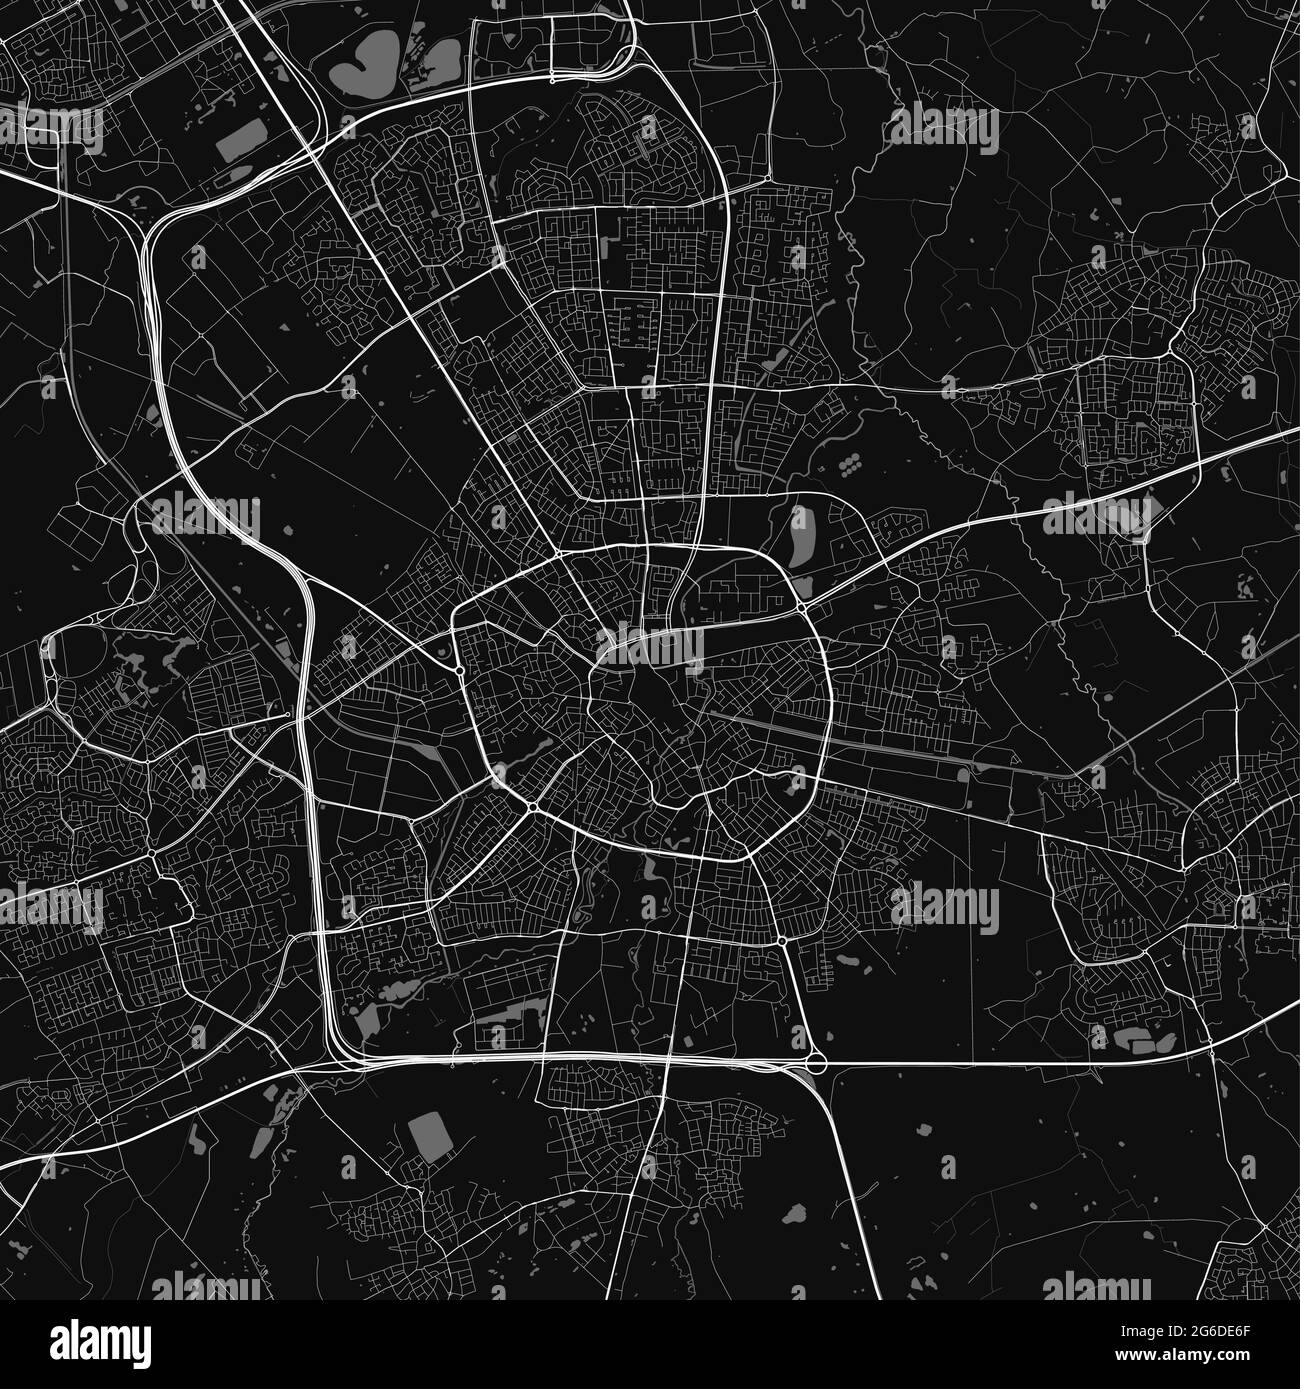 Plan de la ville urbaine d'Eindhoven. Illustration vectorielle ...